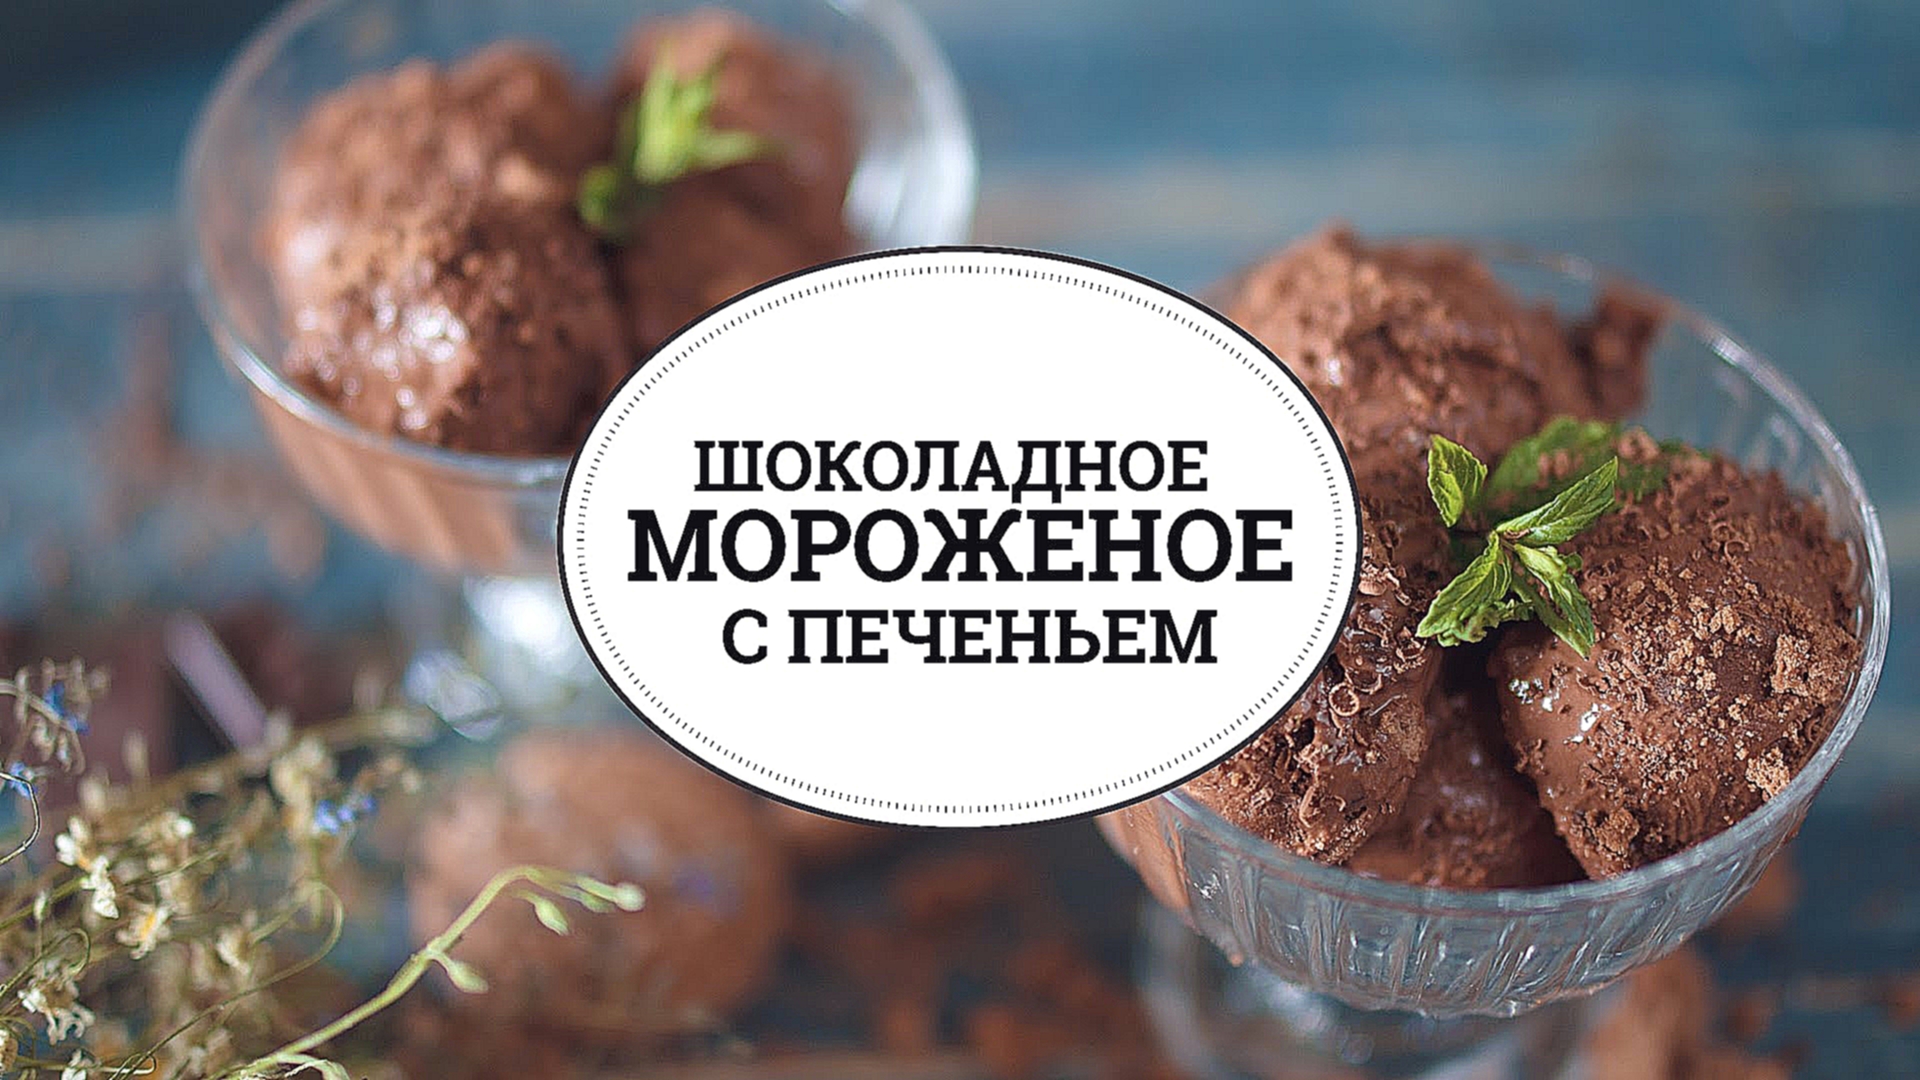 Шоколадное мороженое с печеньем [sweet & flour] 